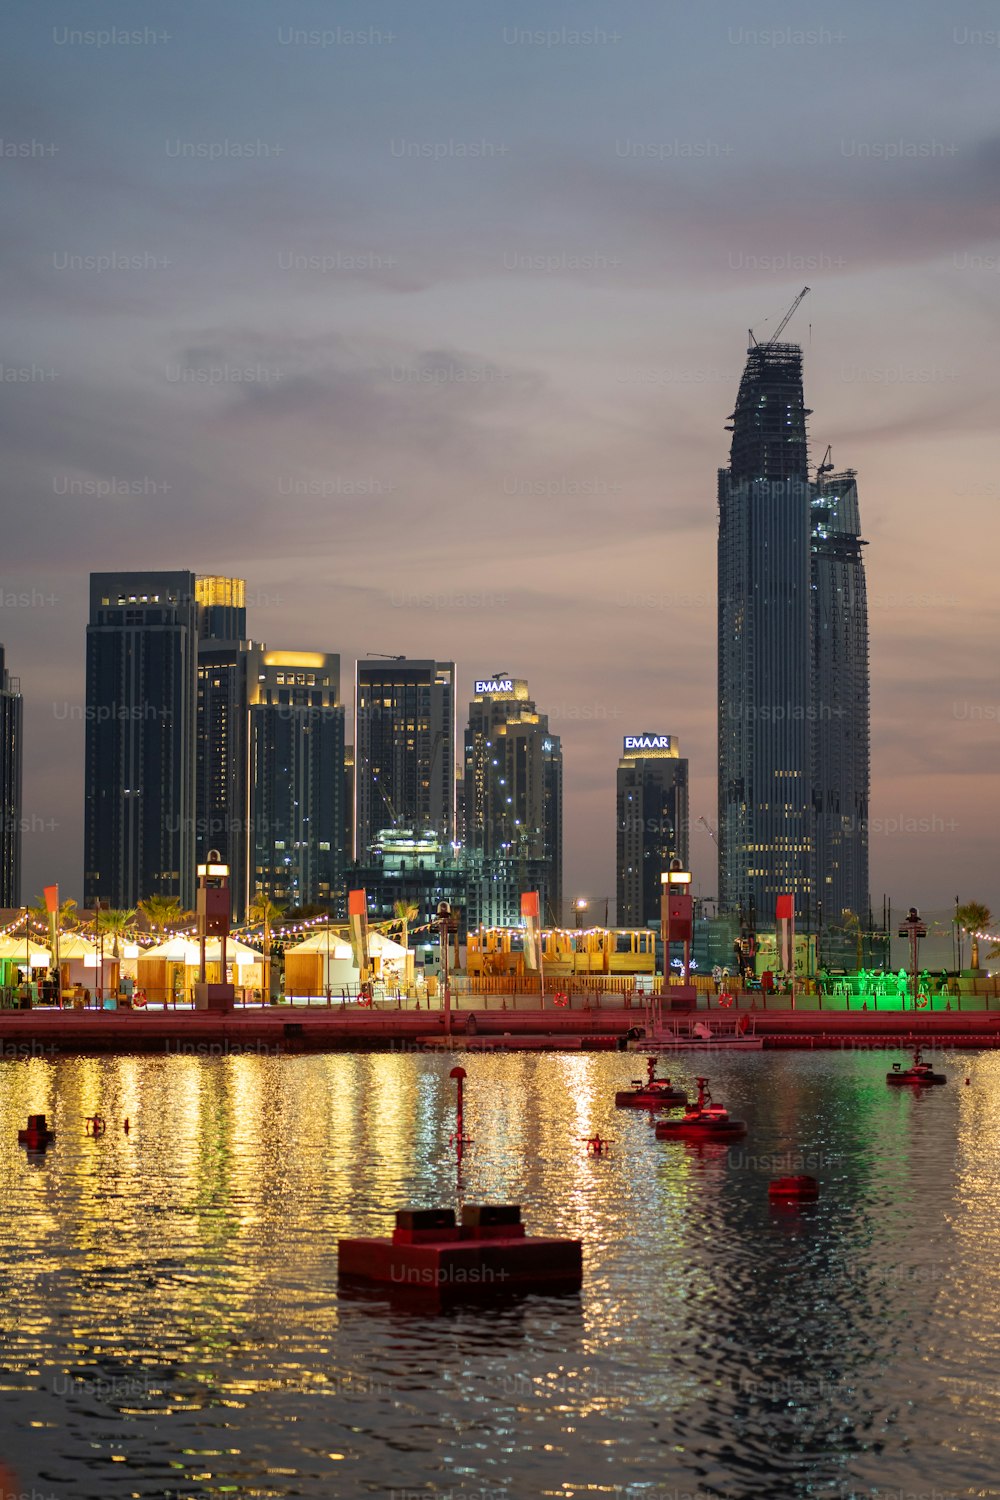 Dubaï Festival City Skyline Buildings pendant les soleils